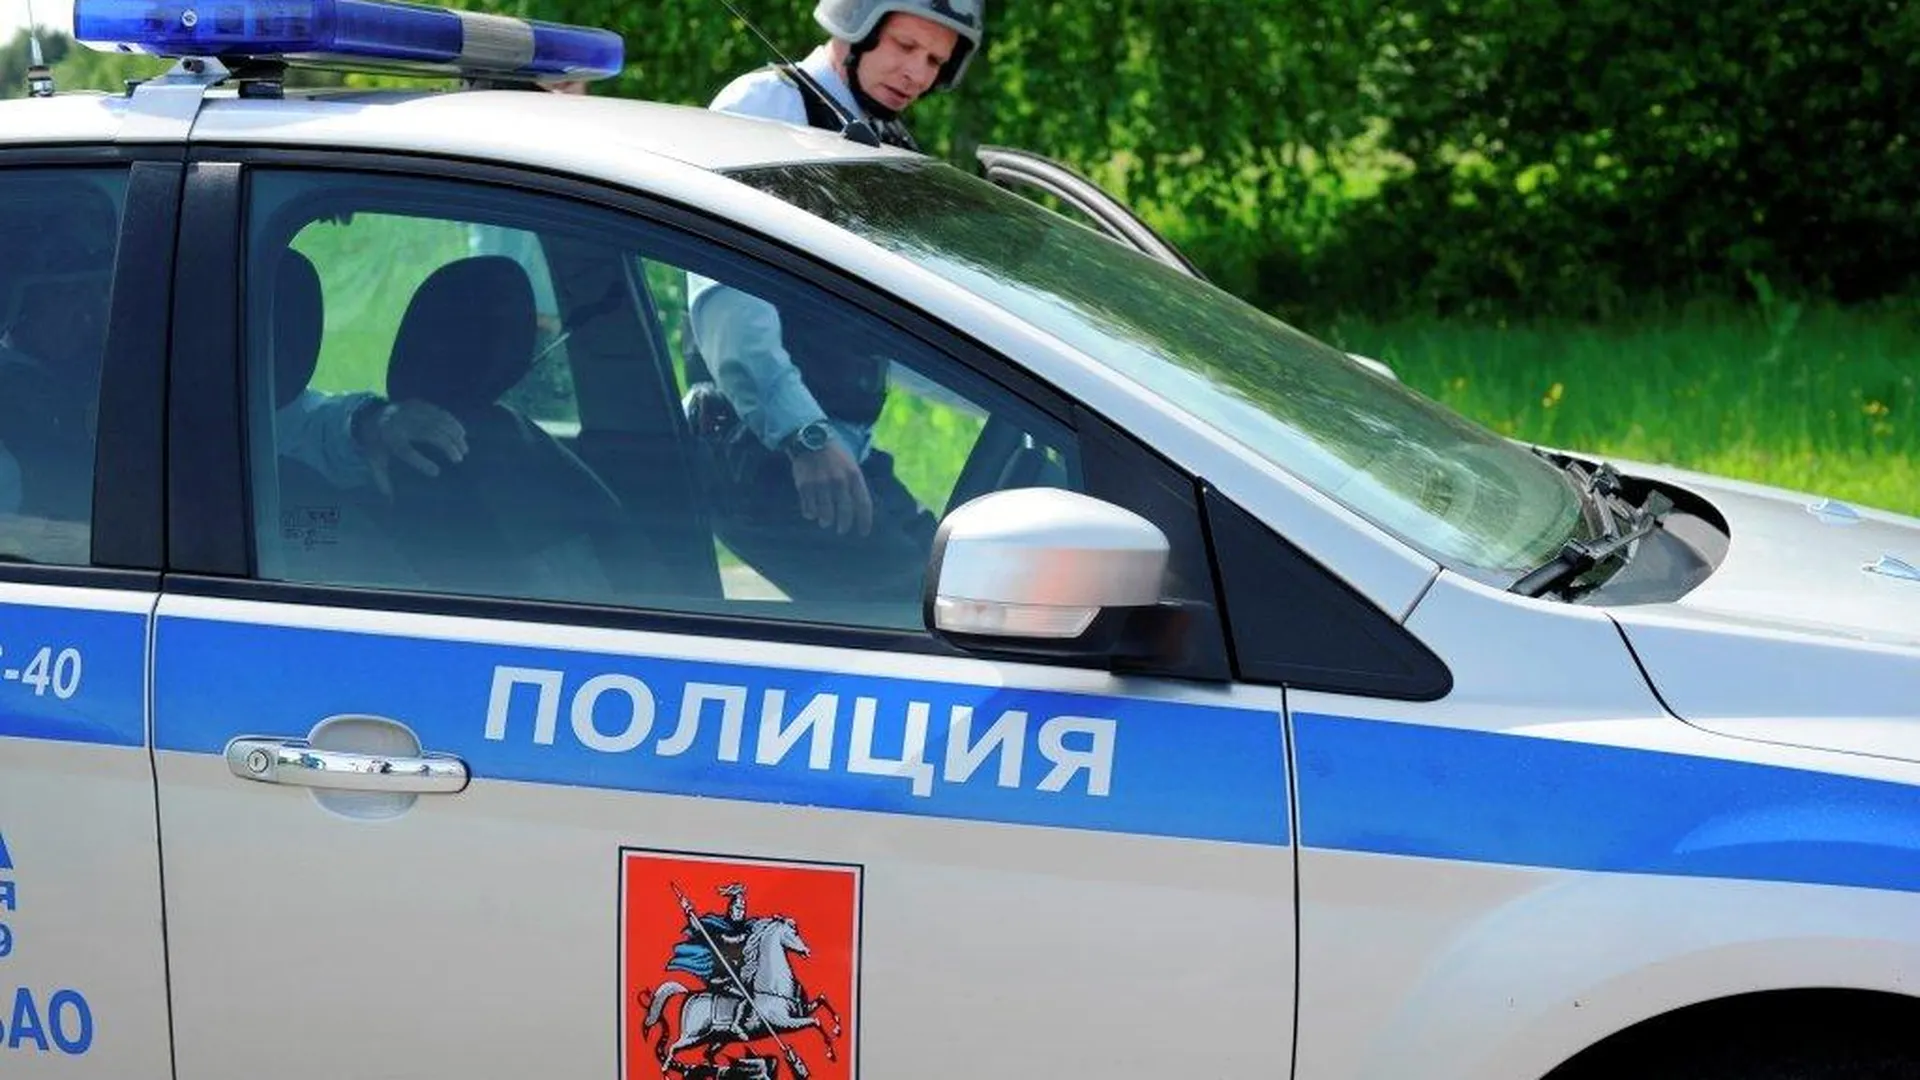 Московская полиция обеспечена вооружением на 90%